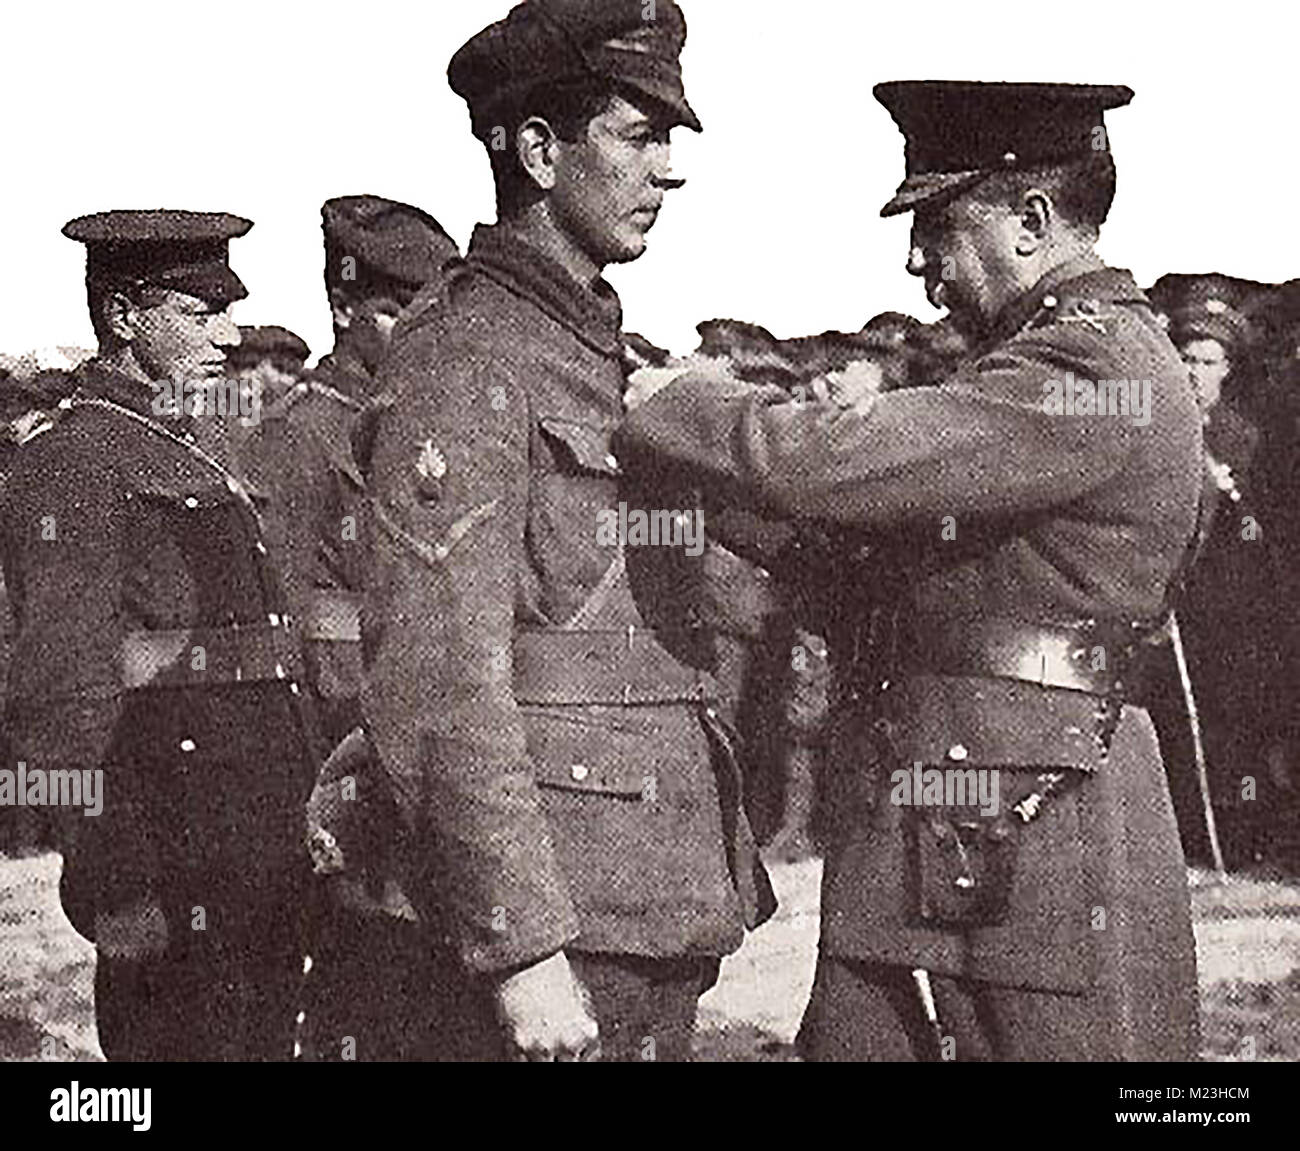 Première Guerre mondiale (1914-1918) alias la Grande Guerre ou Première Guerre mondiale - la guerre des tranchées - LA PREMIÈRE GUERRE MONDIALE - un journal photo montrant le décor d'un soldat canadien sur le champ de bataille Banque D'Images